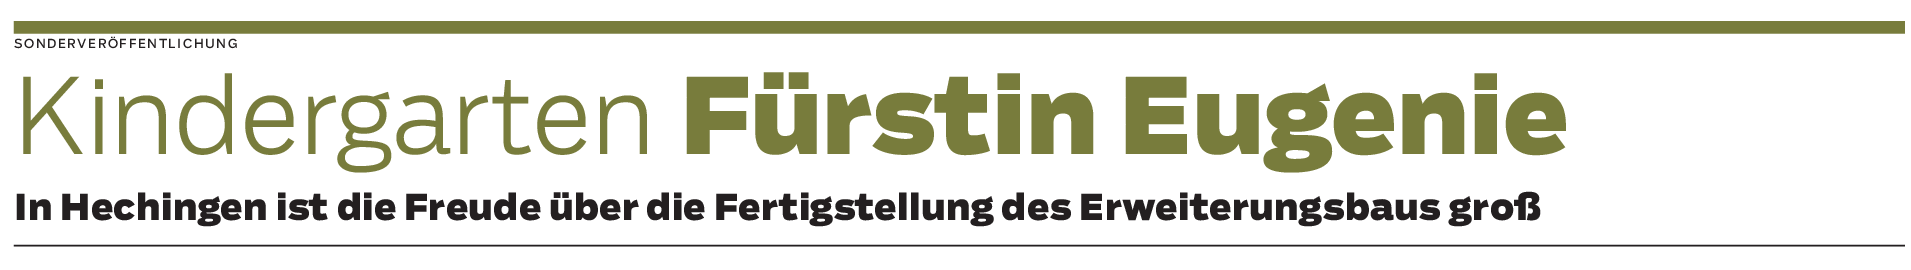 Kindergarten Fürstin Eugenie in Hechingen: Bis zu 75 neue Betreuungsplätze